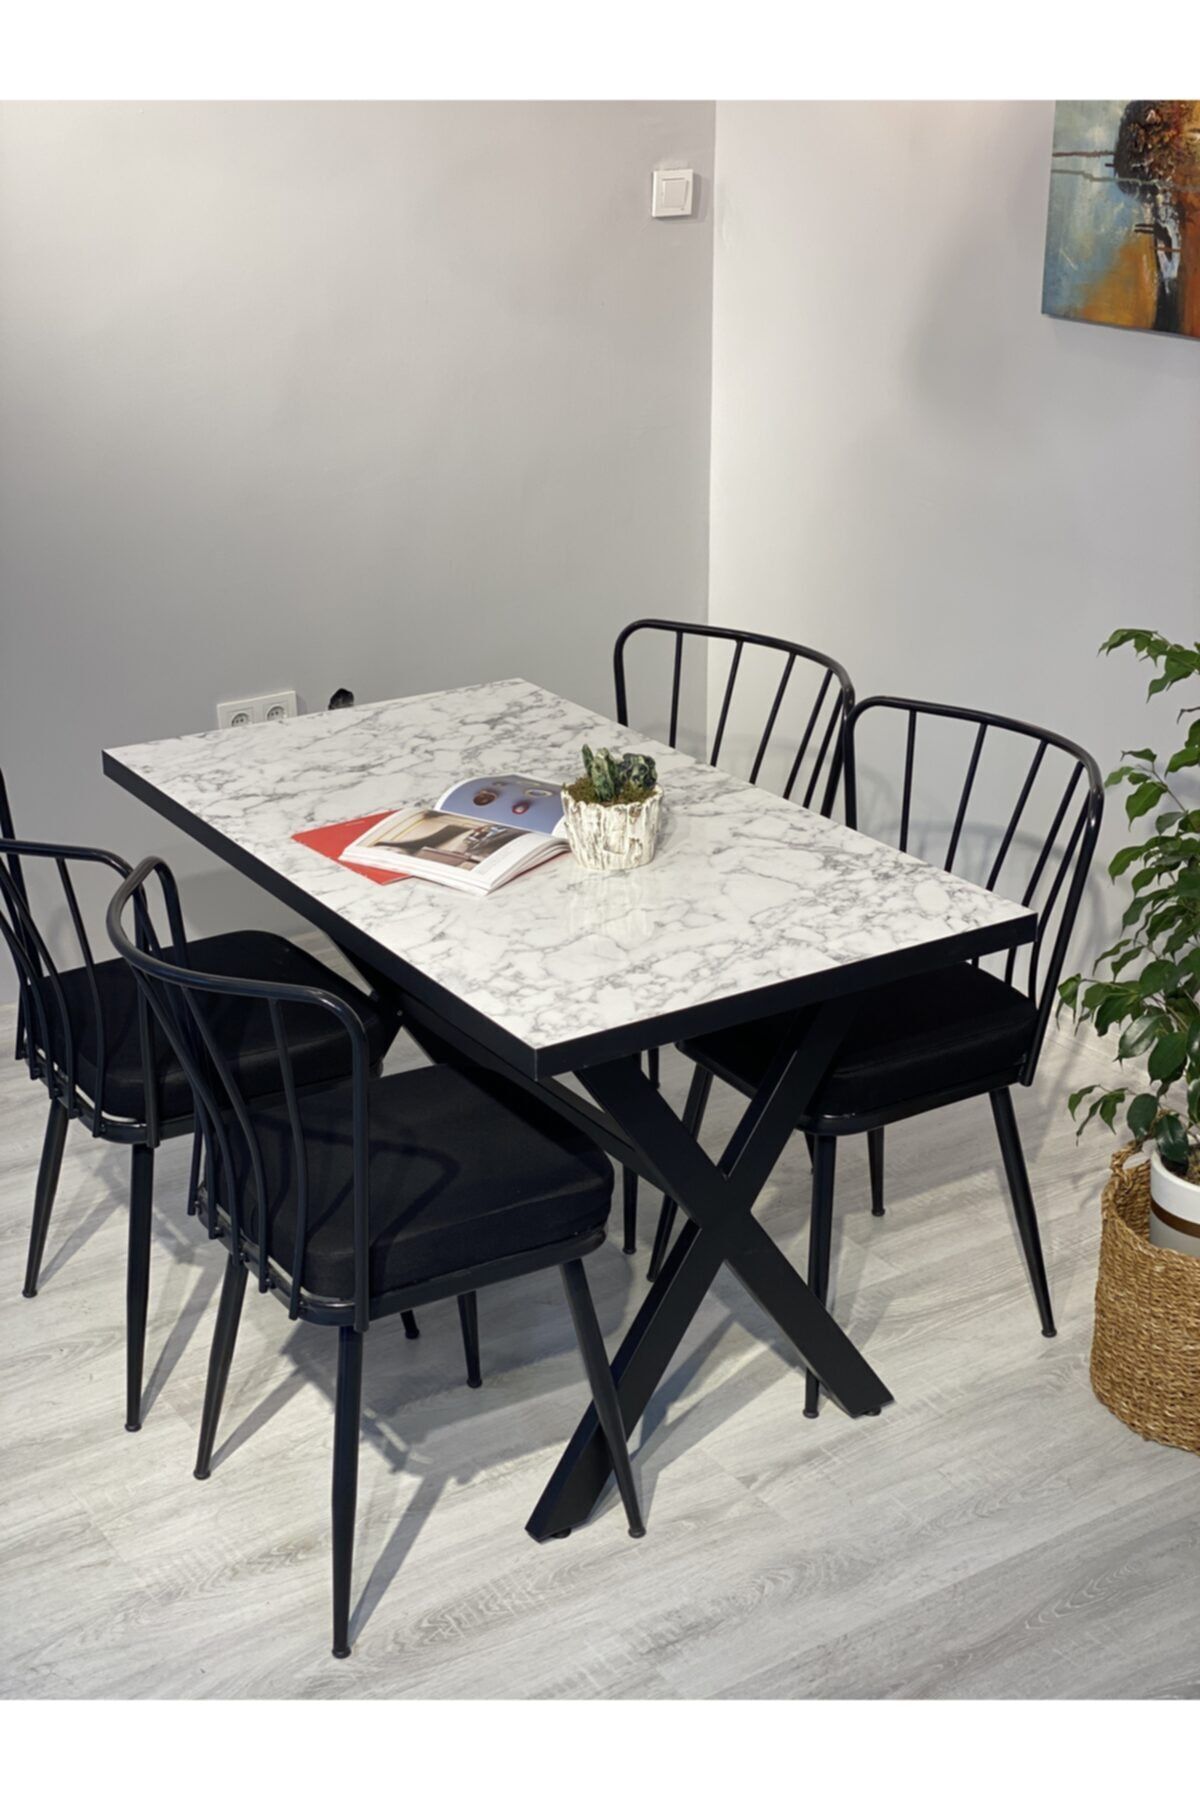 Resa mobilya design Yemek Masası Takımı 120x70 Ve 4 Adet Güneş Sandalye